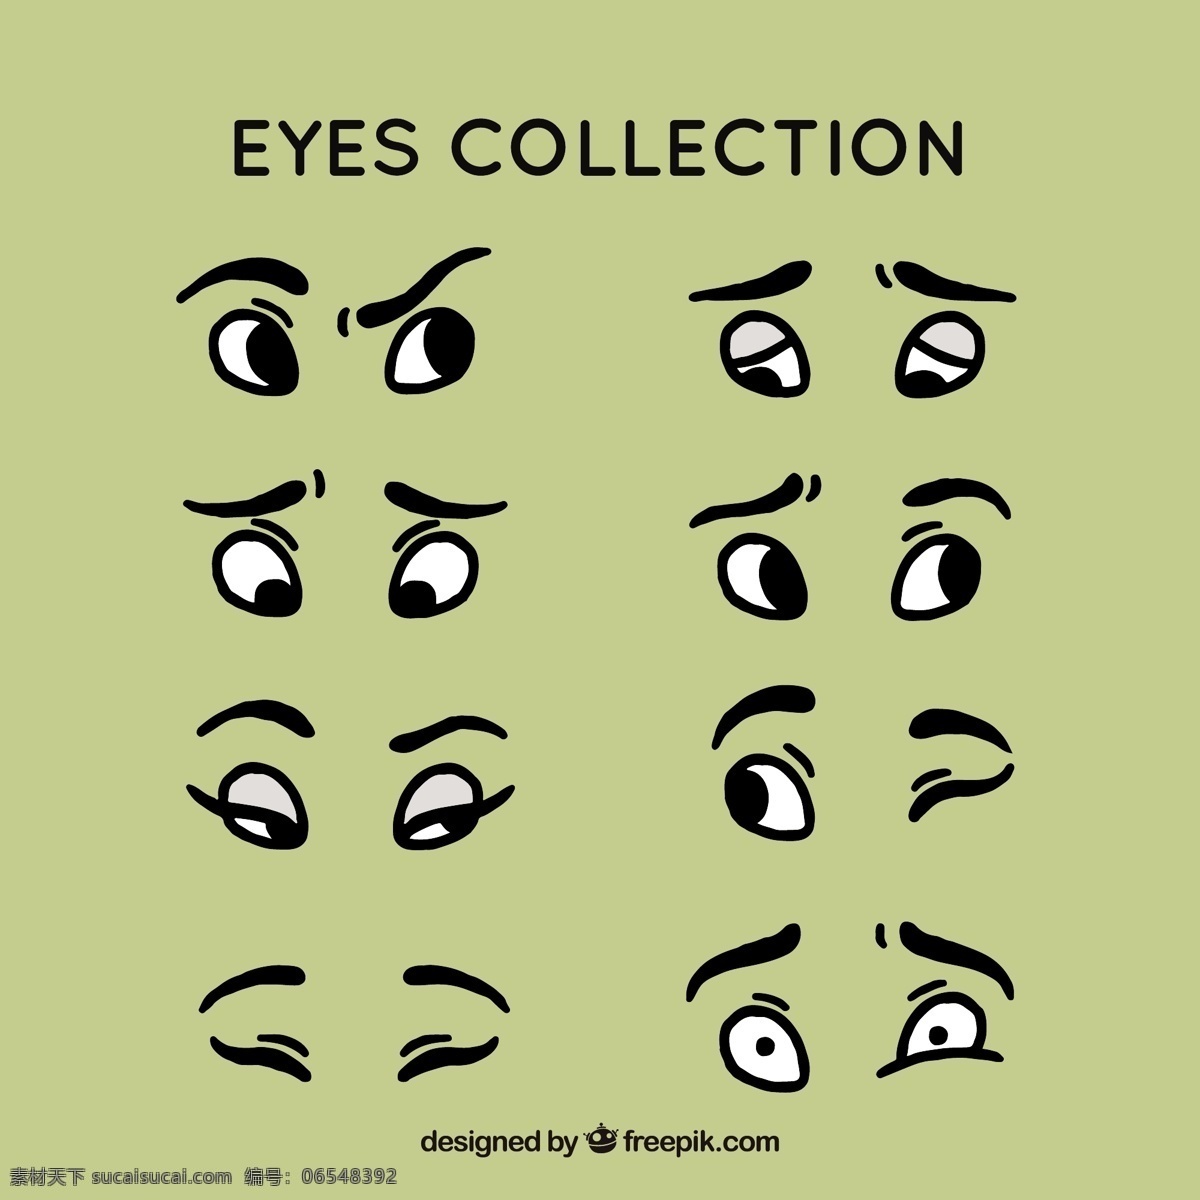 手绘集眼器 手 字 卡通 漫画 手绘 眼 画 元素 卡通人物 人物 素描 草图 眉毛 收藏 卡通眼睛 成套 表情